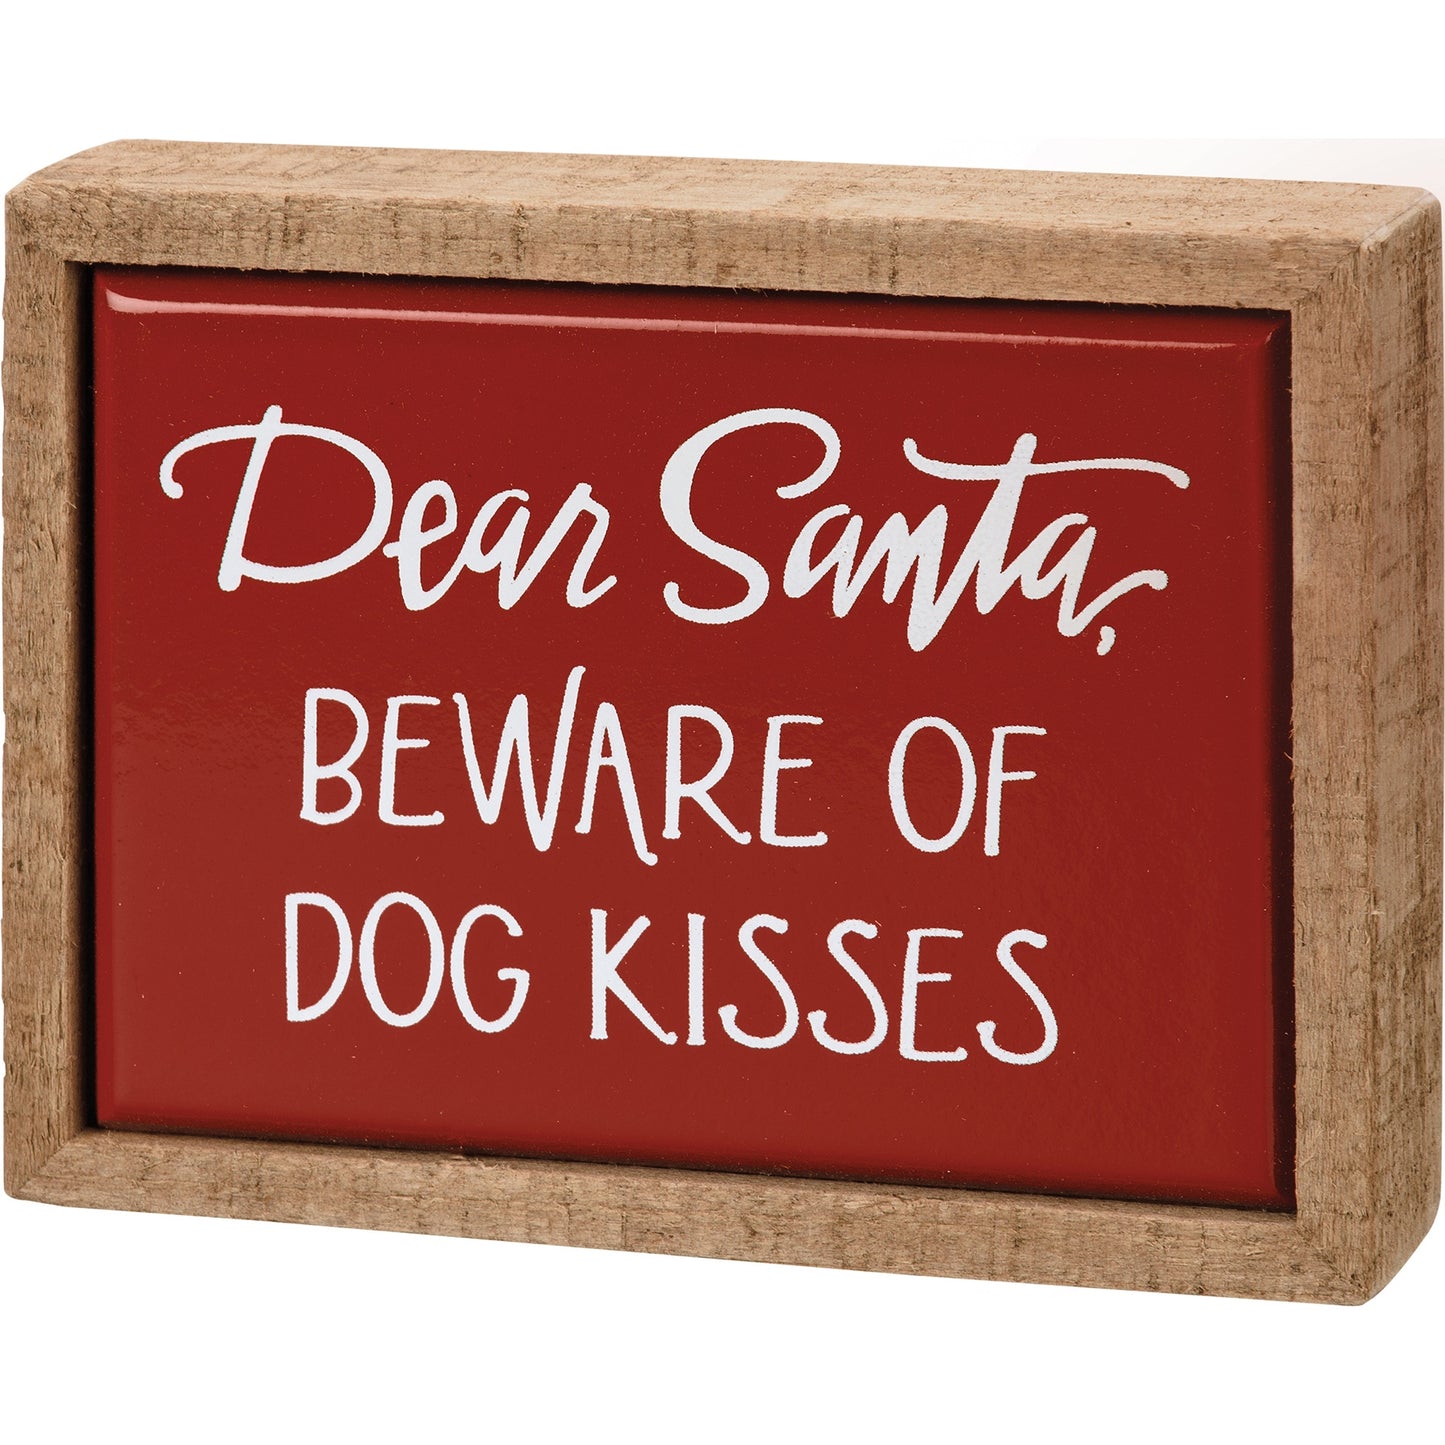 Dear Santa, Beware of Dog Kisses Box Sign